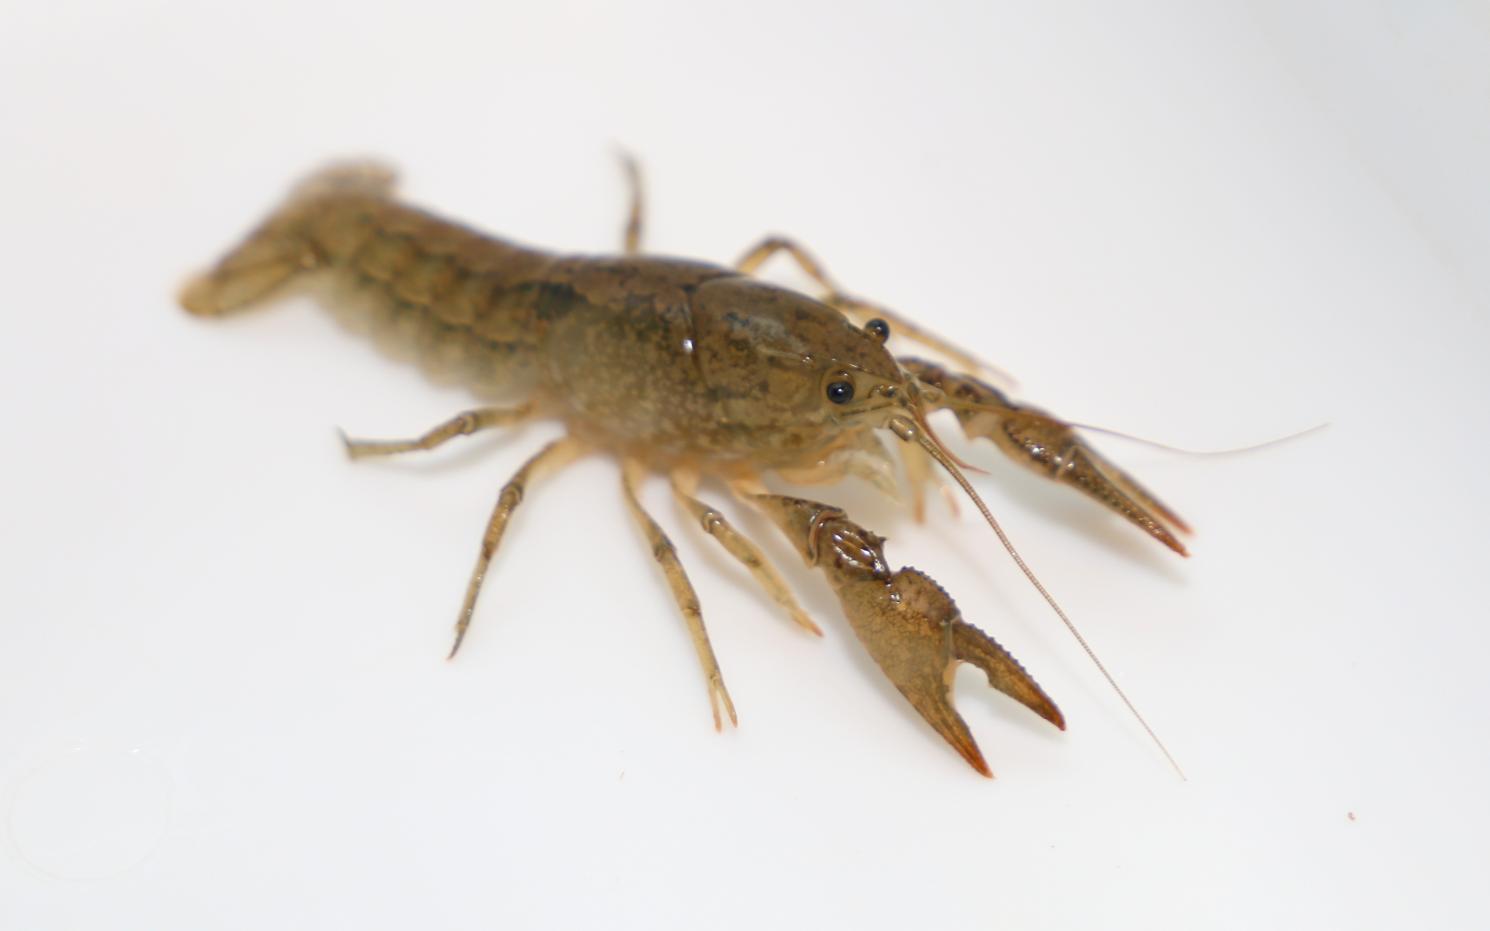 Digger crayfish (Fallicambarus sp.)